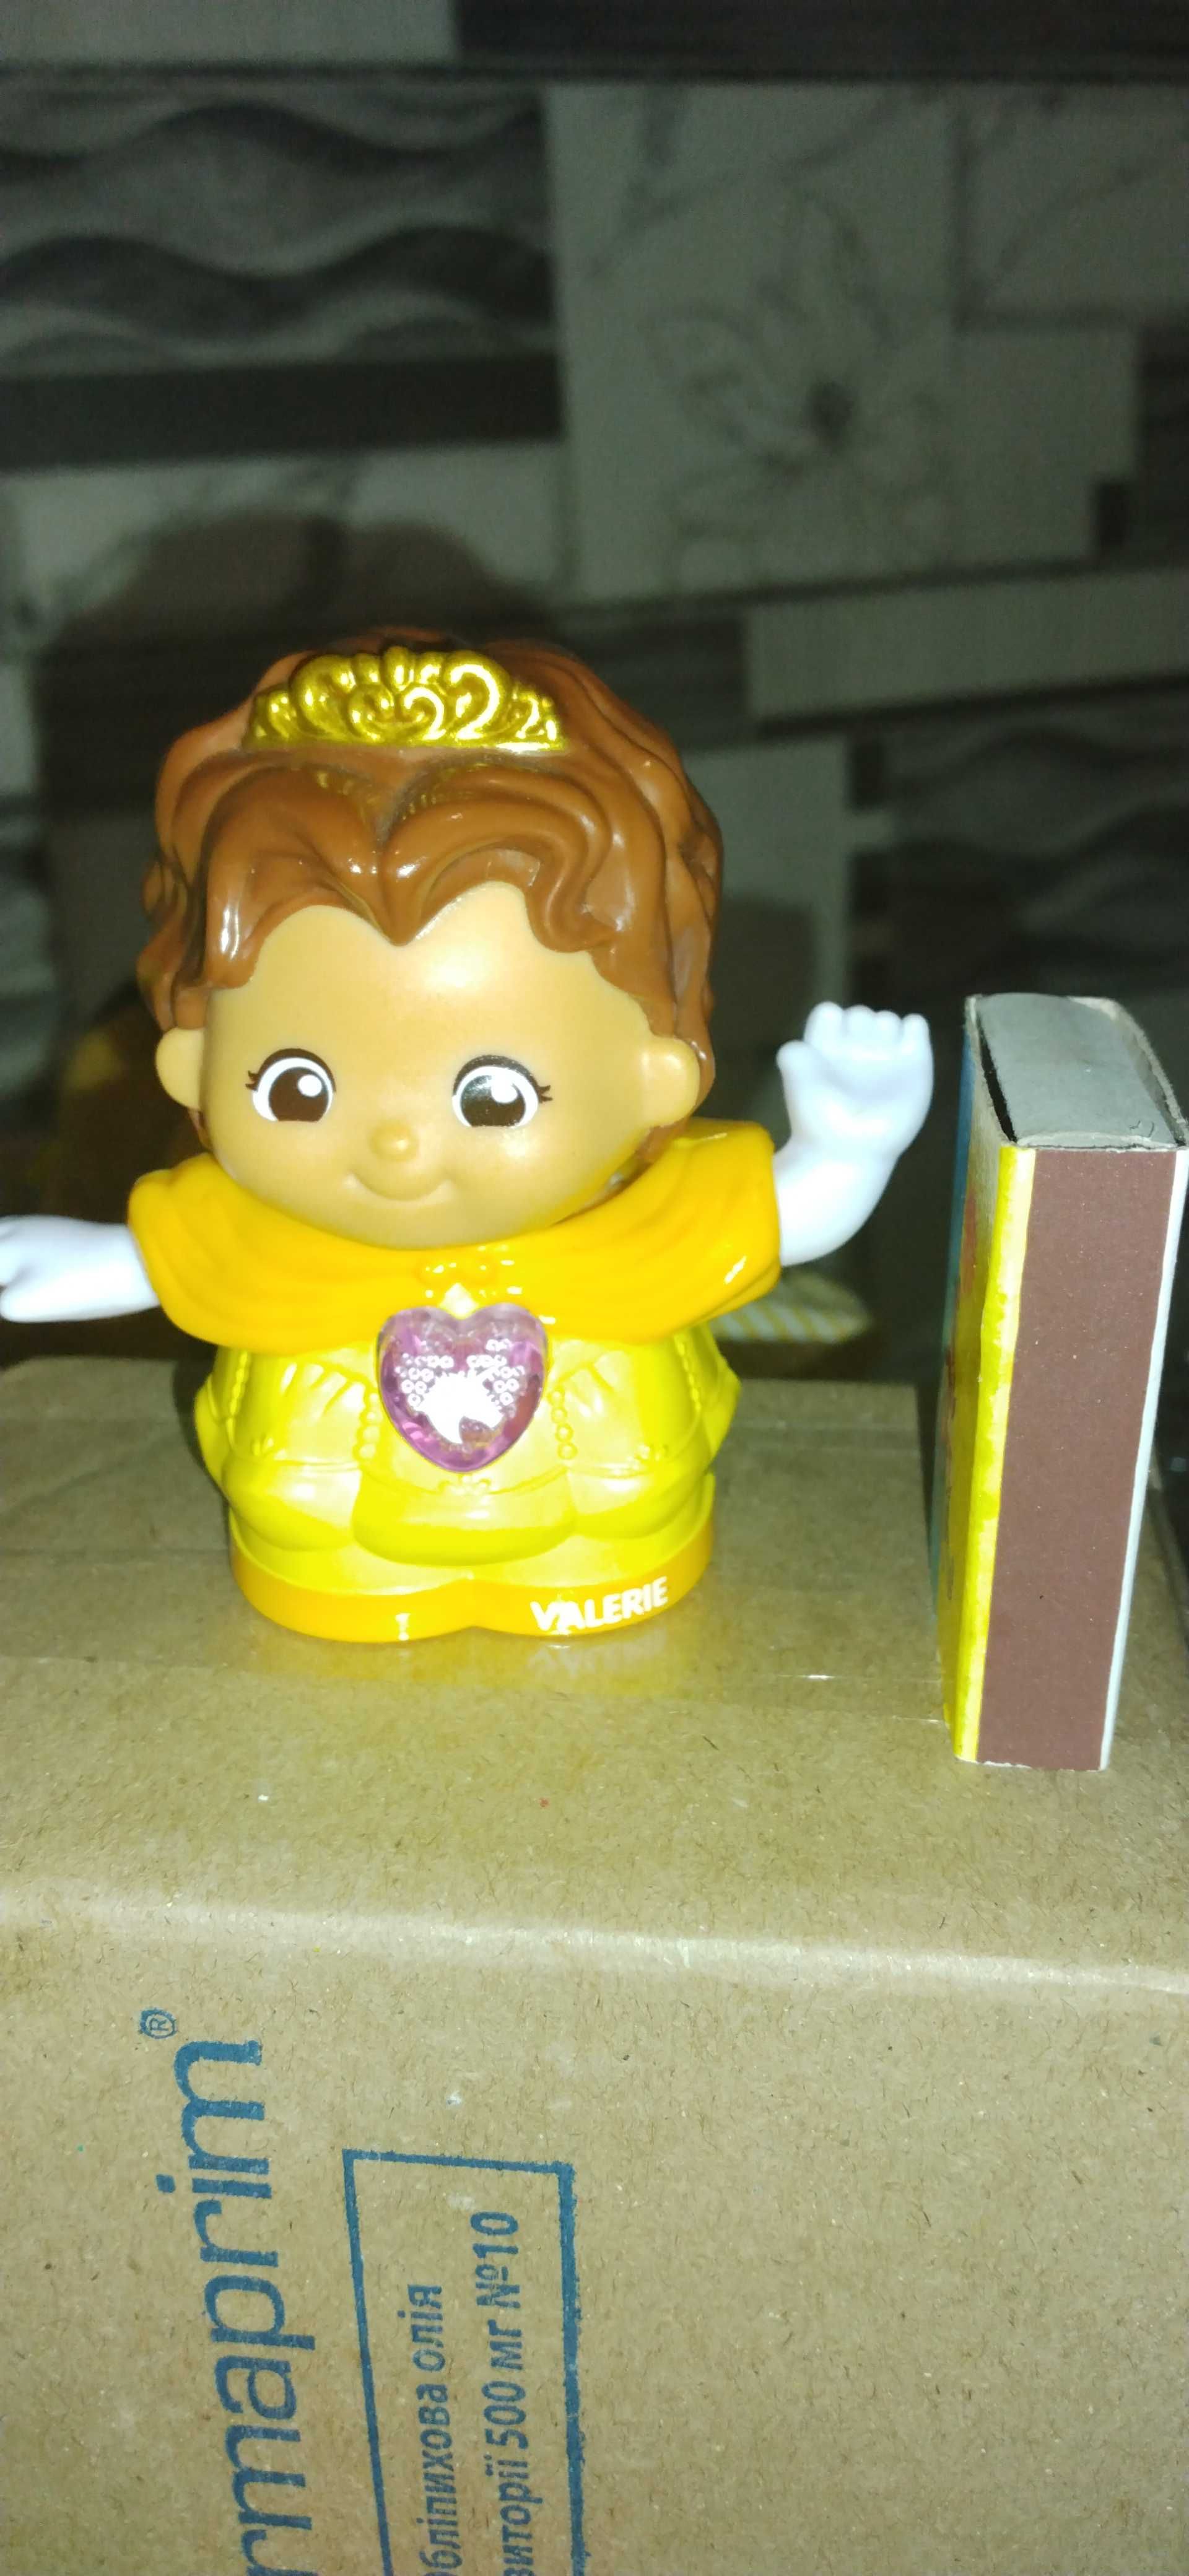 Говорящая игрушка - принцесса Валери (на немецком языке), VTech.